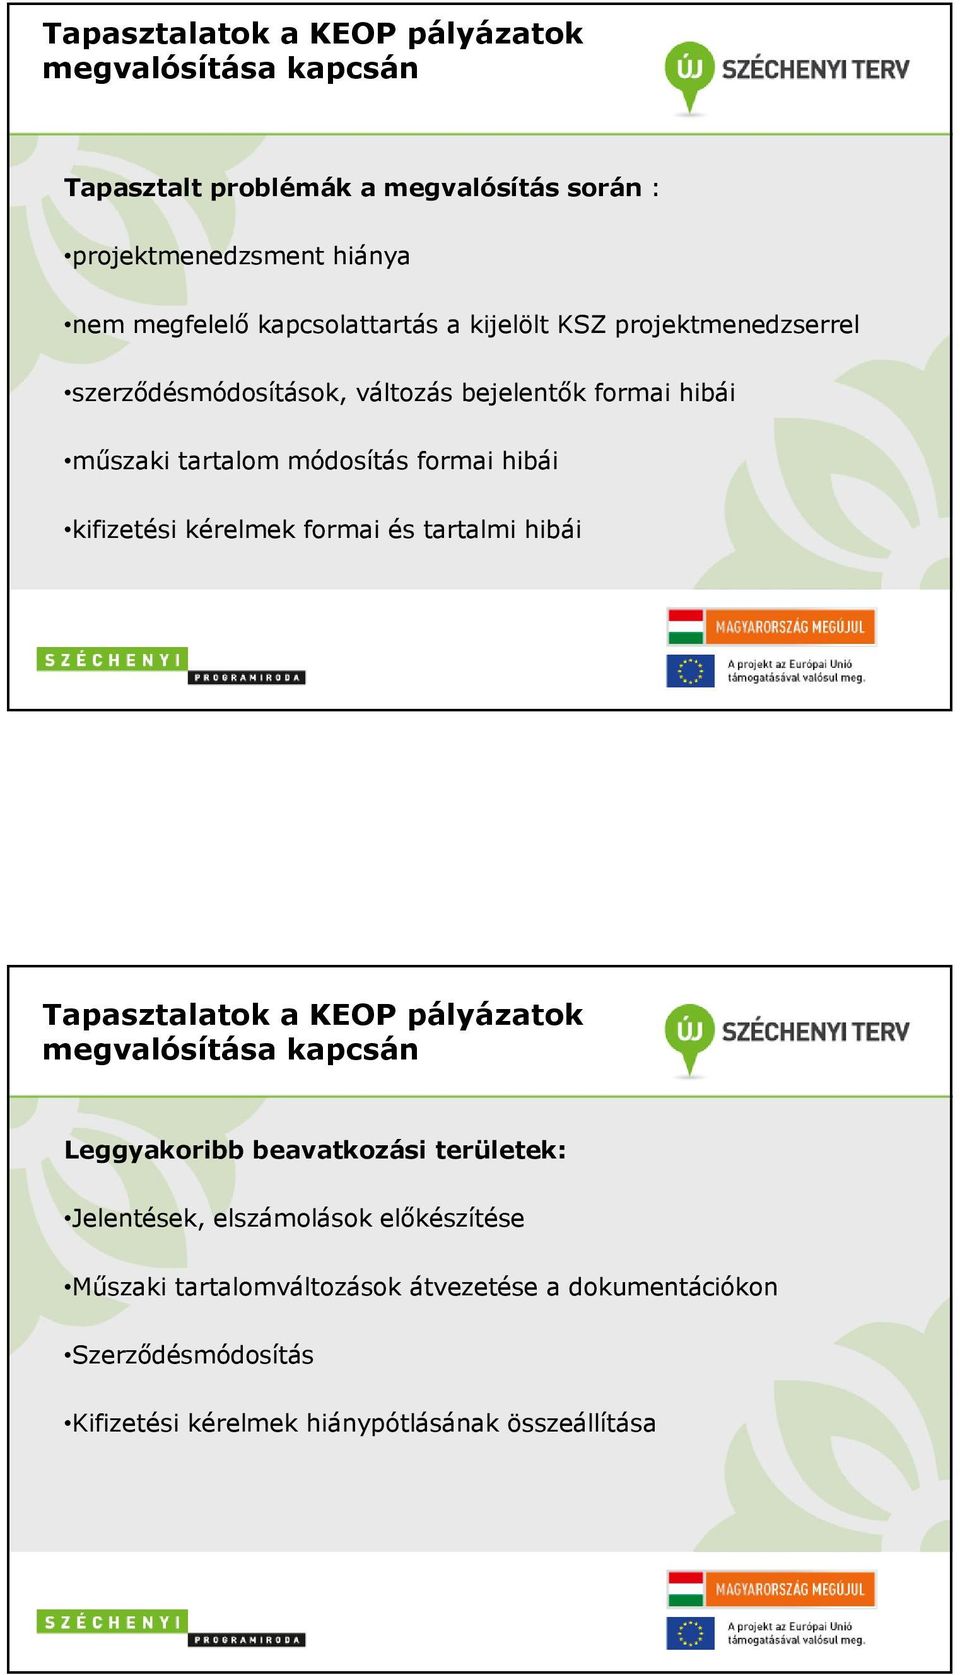 kifizetési kérelmek formai és tartalmi hibái Tapasztalatok a KEOP pályázatok megvalósítása kapcsán Leggyakoribb beavatkozási területek: